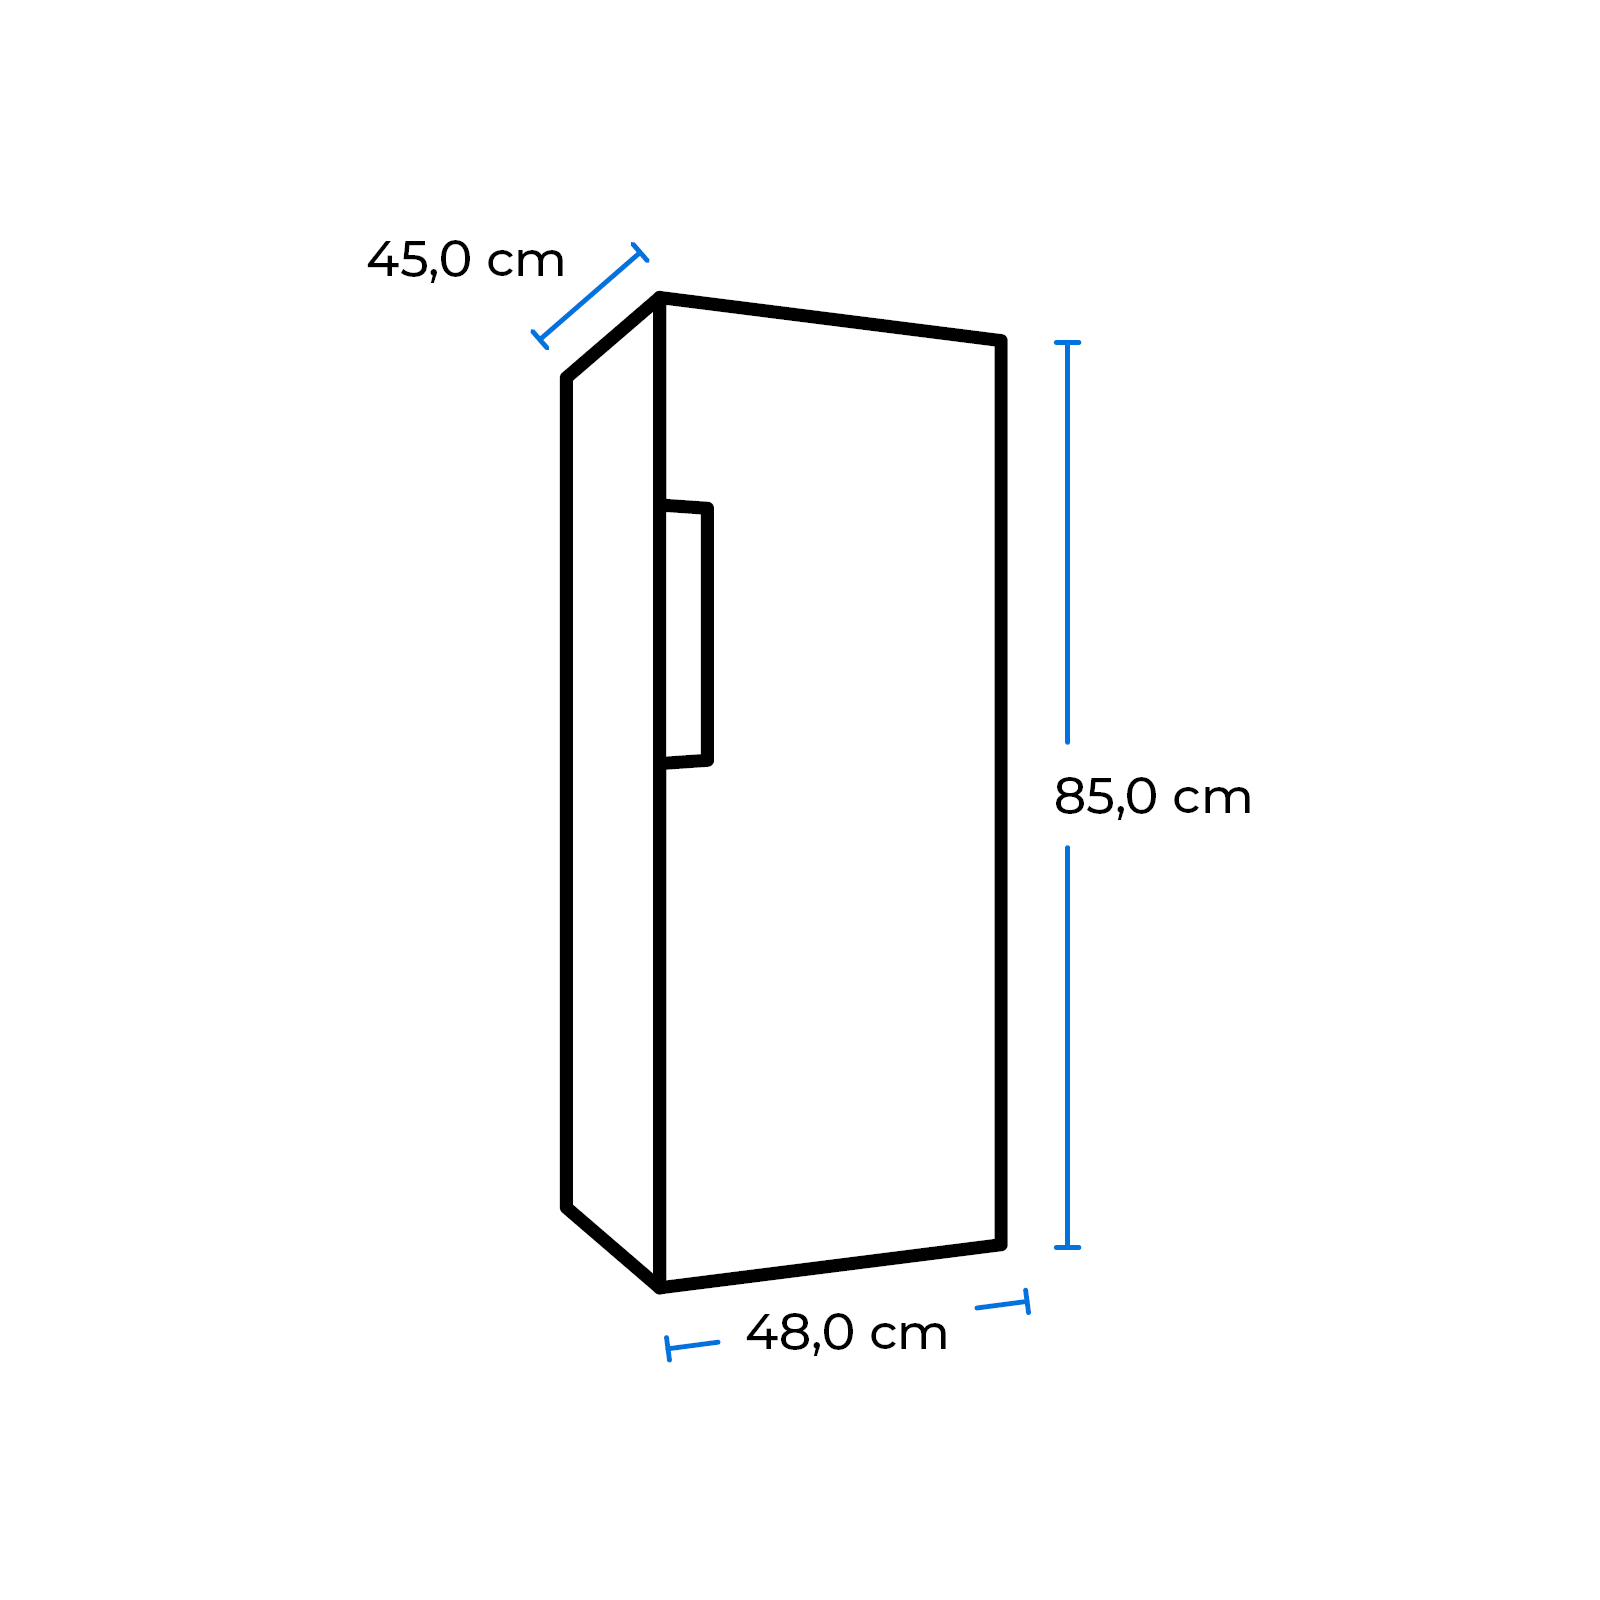 EXQUISIT KS117-3-010E weiss Freistehende Kühlschränke mm 850 (E, hoch, Weiß)